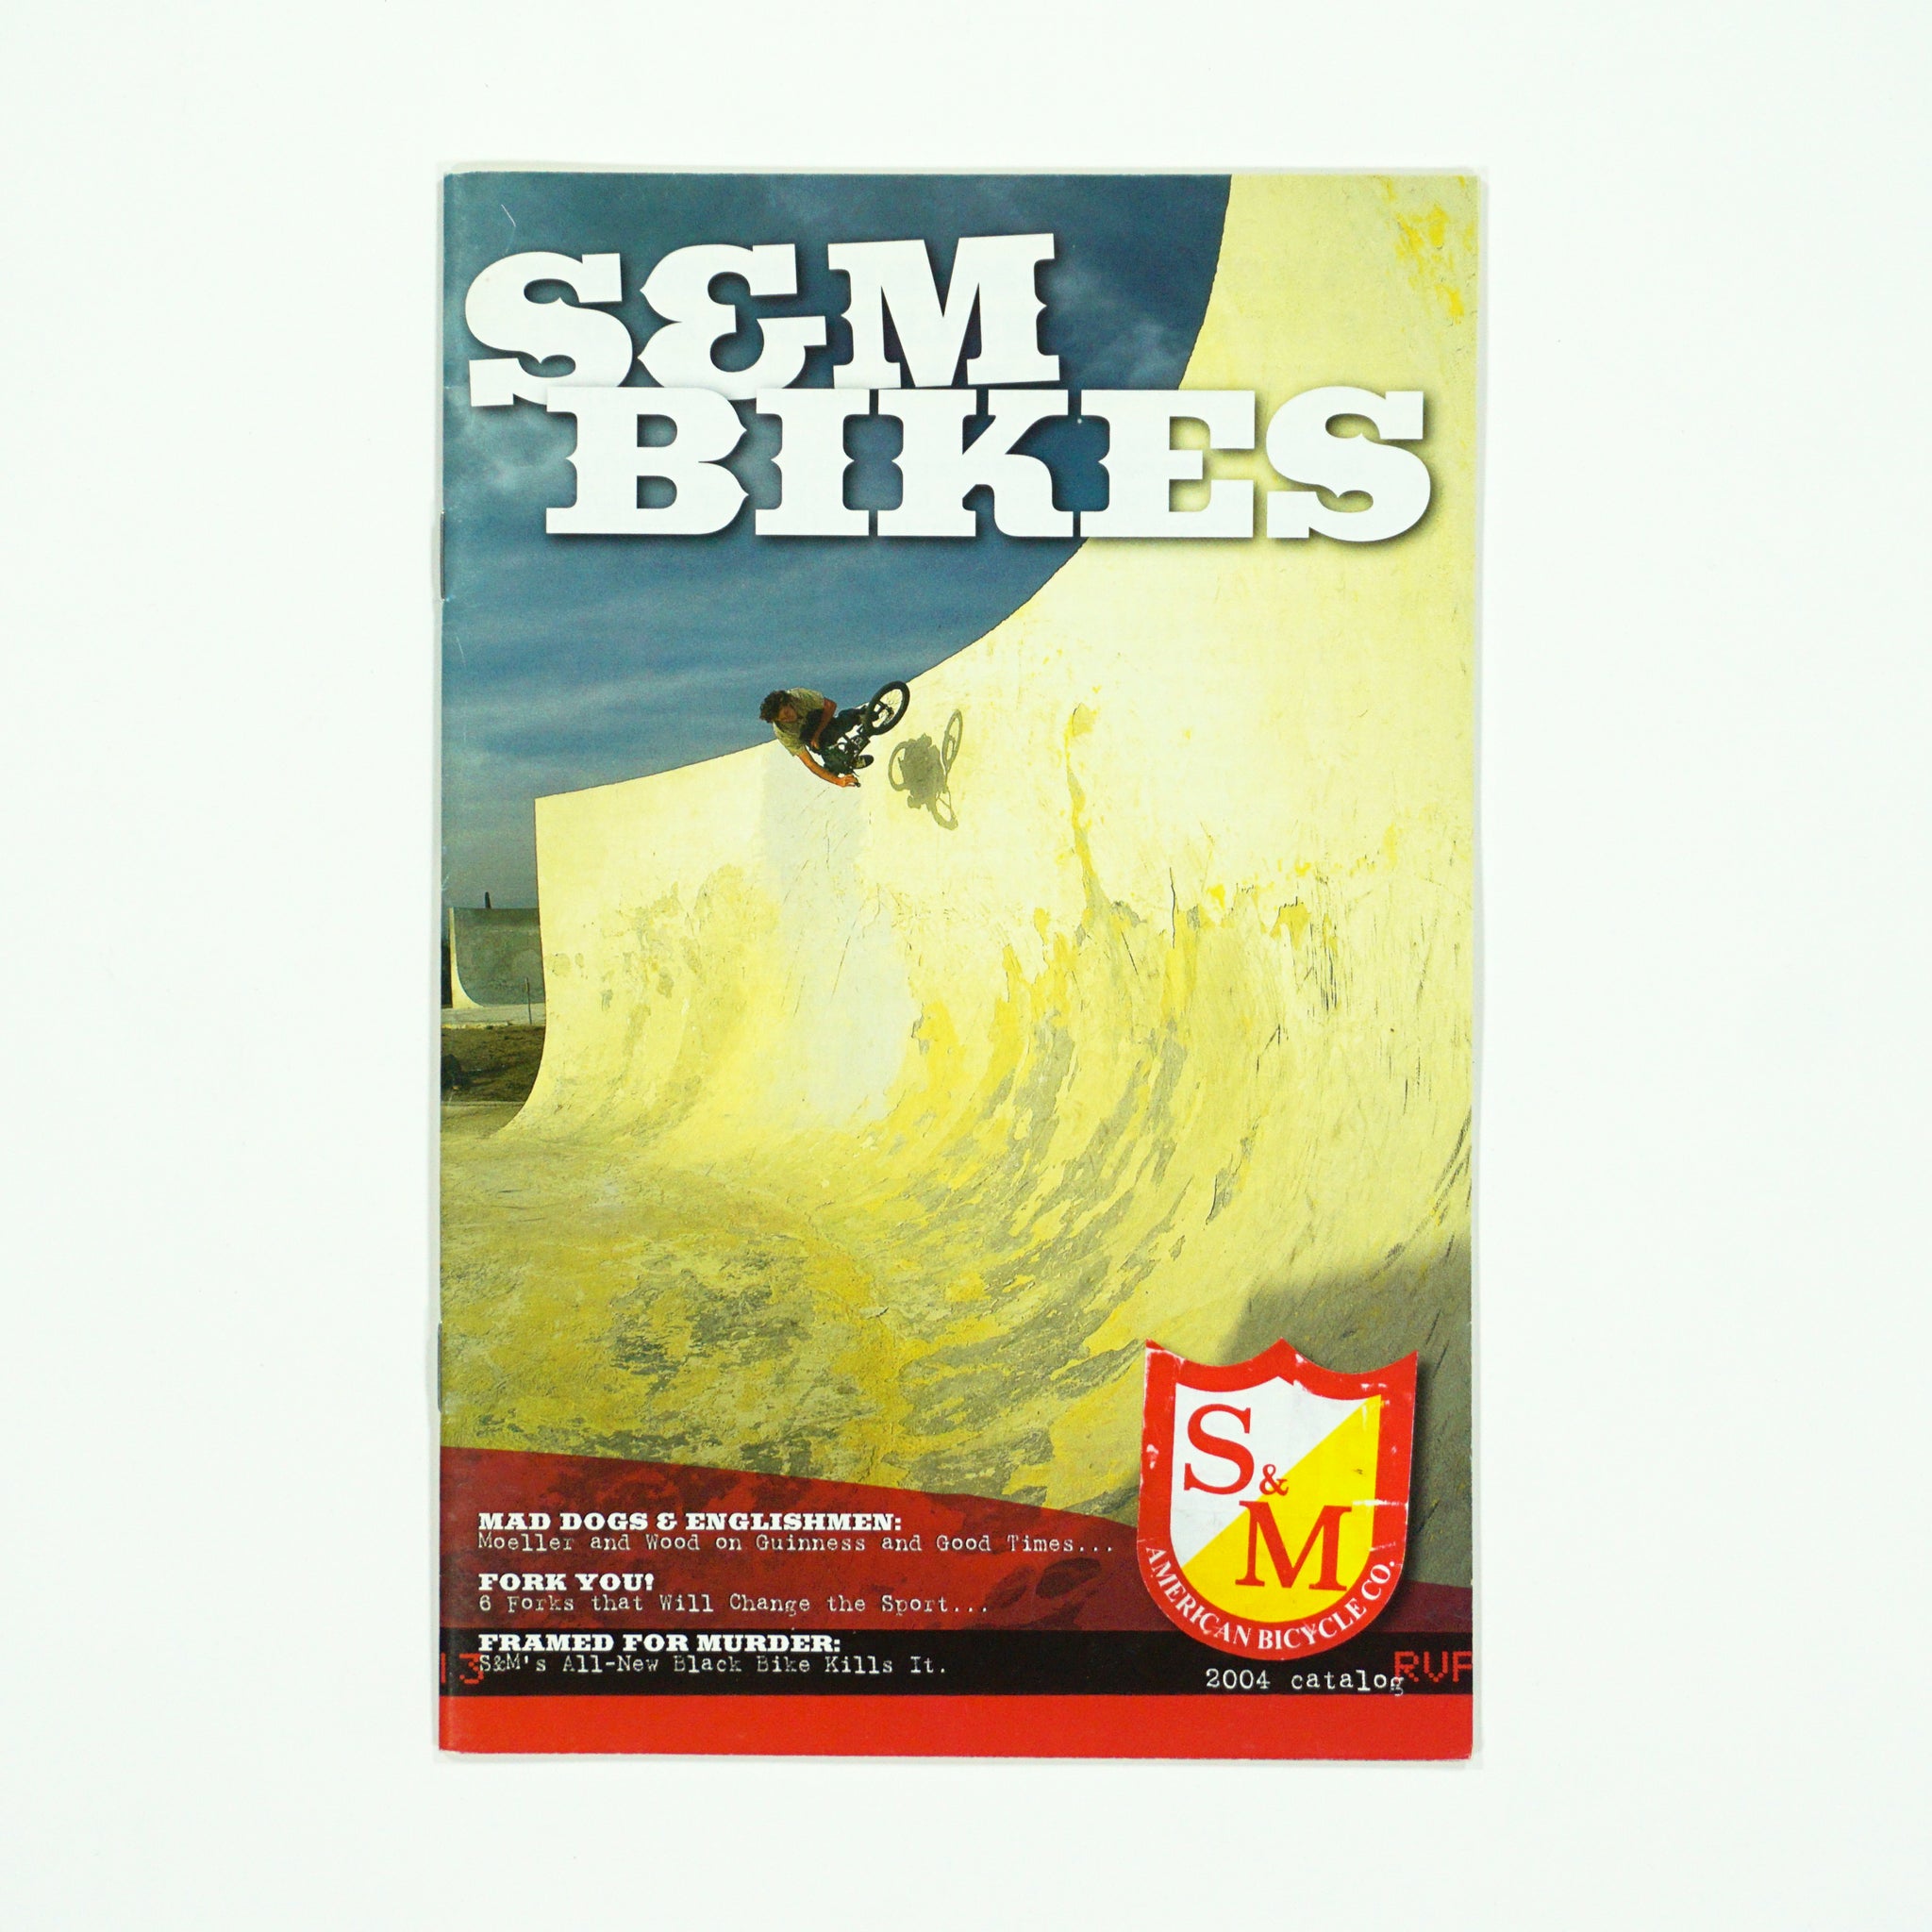 S&M Bikes - 2004 Catalog